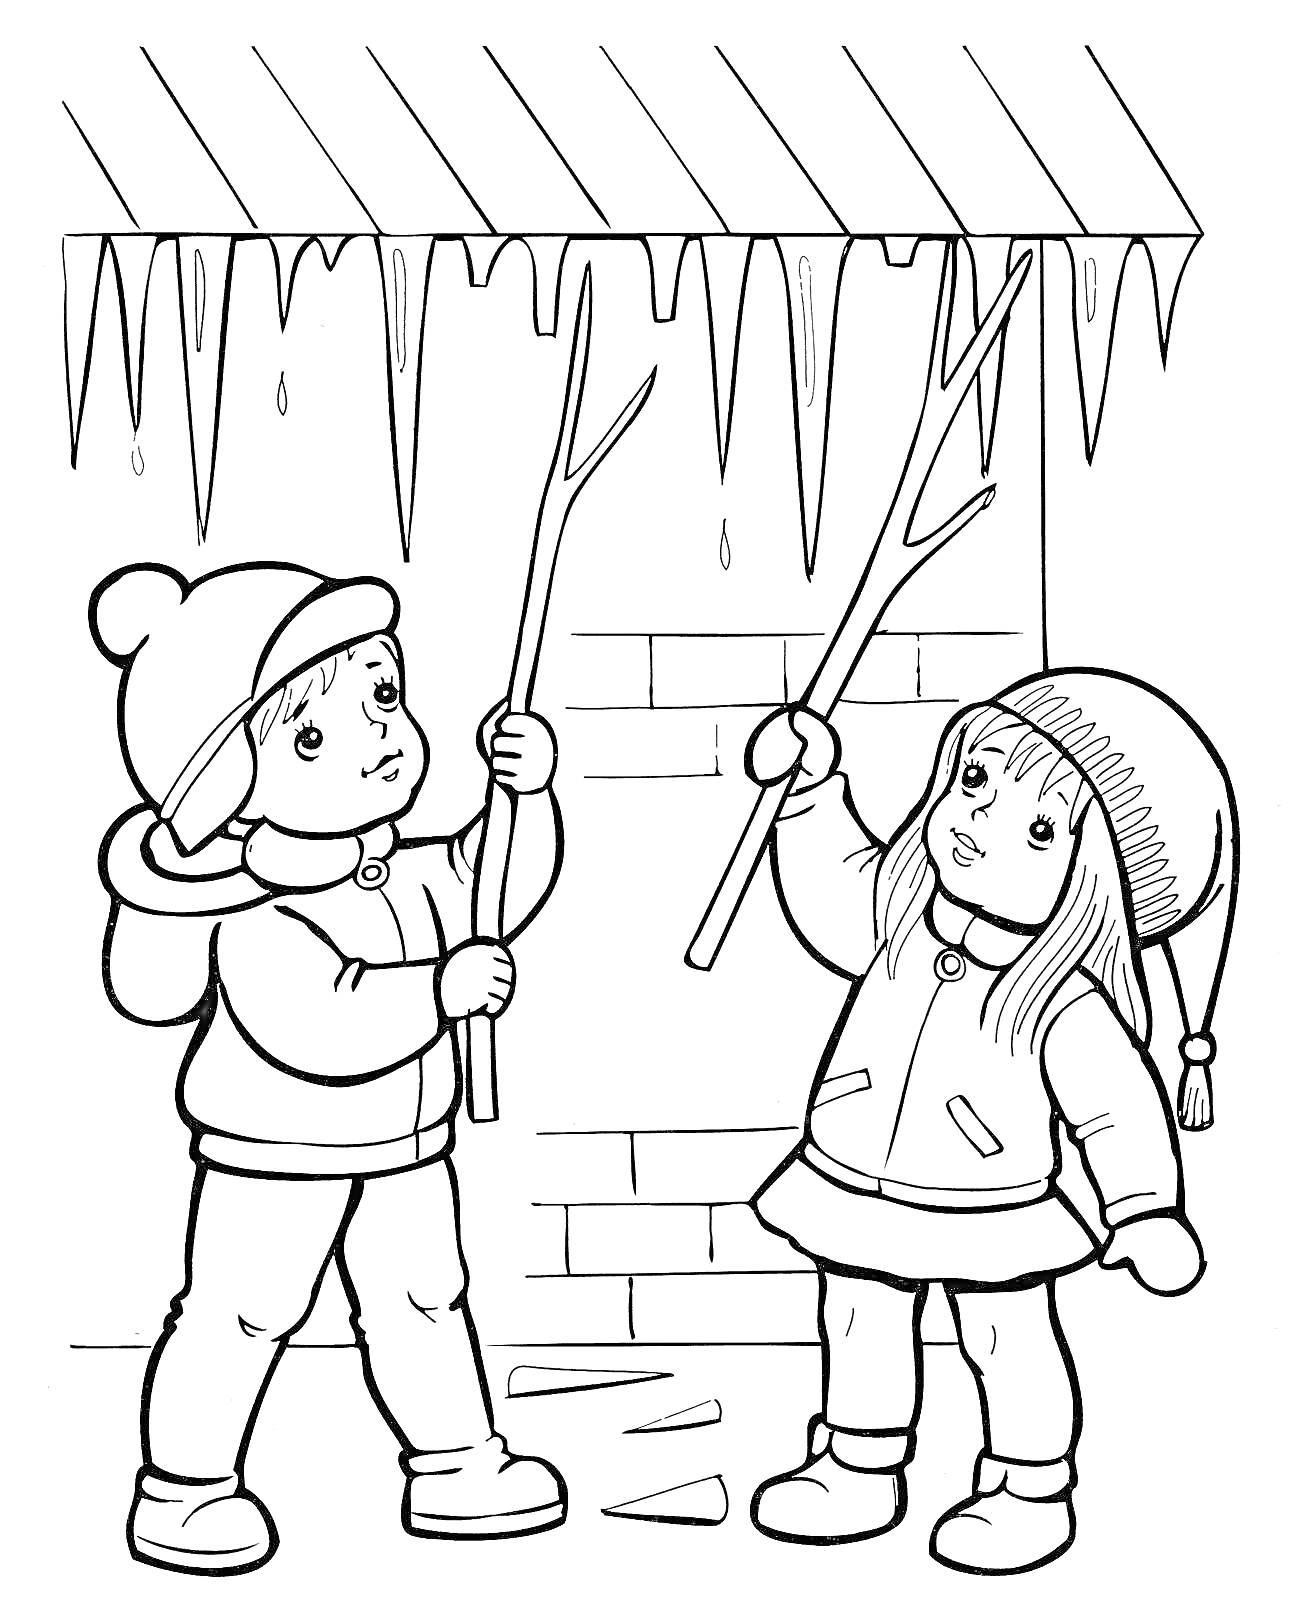 Раскраска Дети под сосульками возле дома, одетые в зимнюю одежду, с палочками в руках, сбивают сосульки с крыши